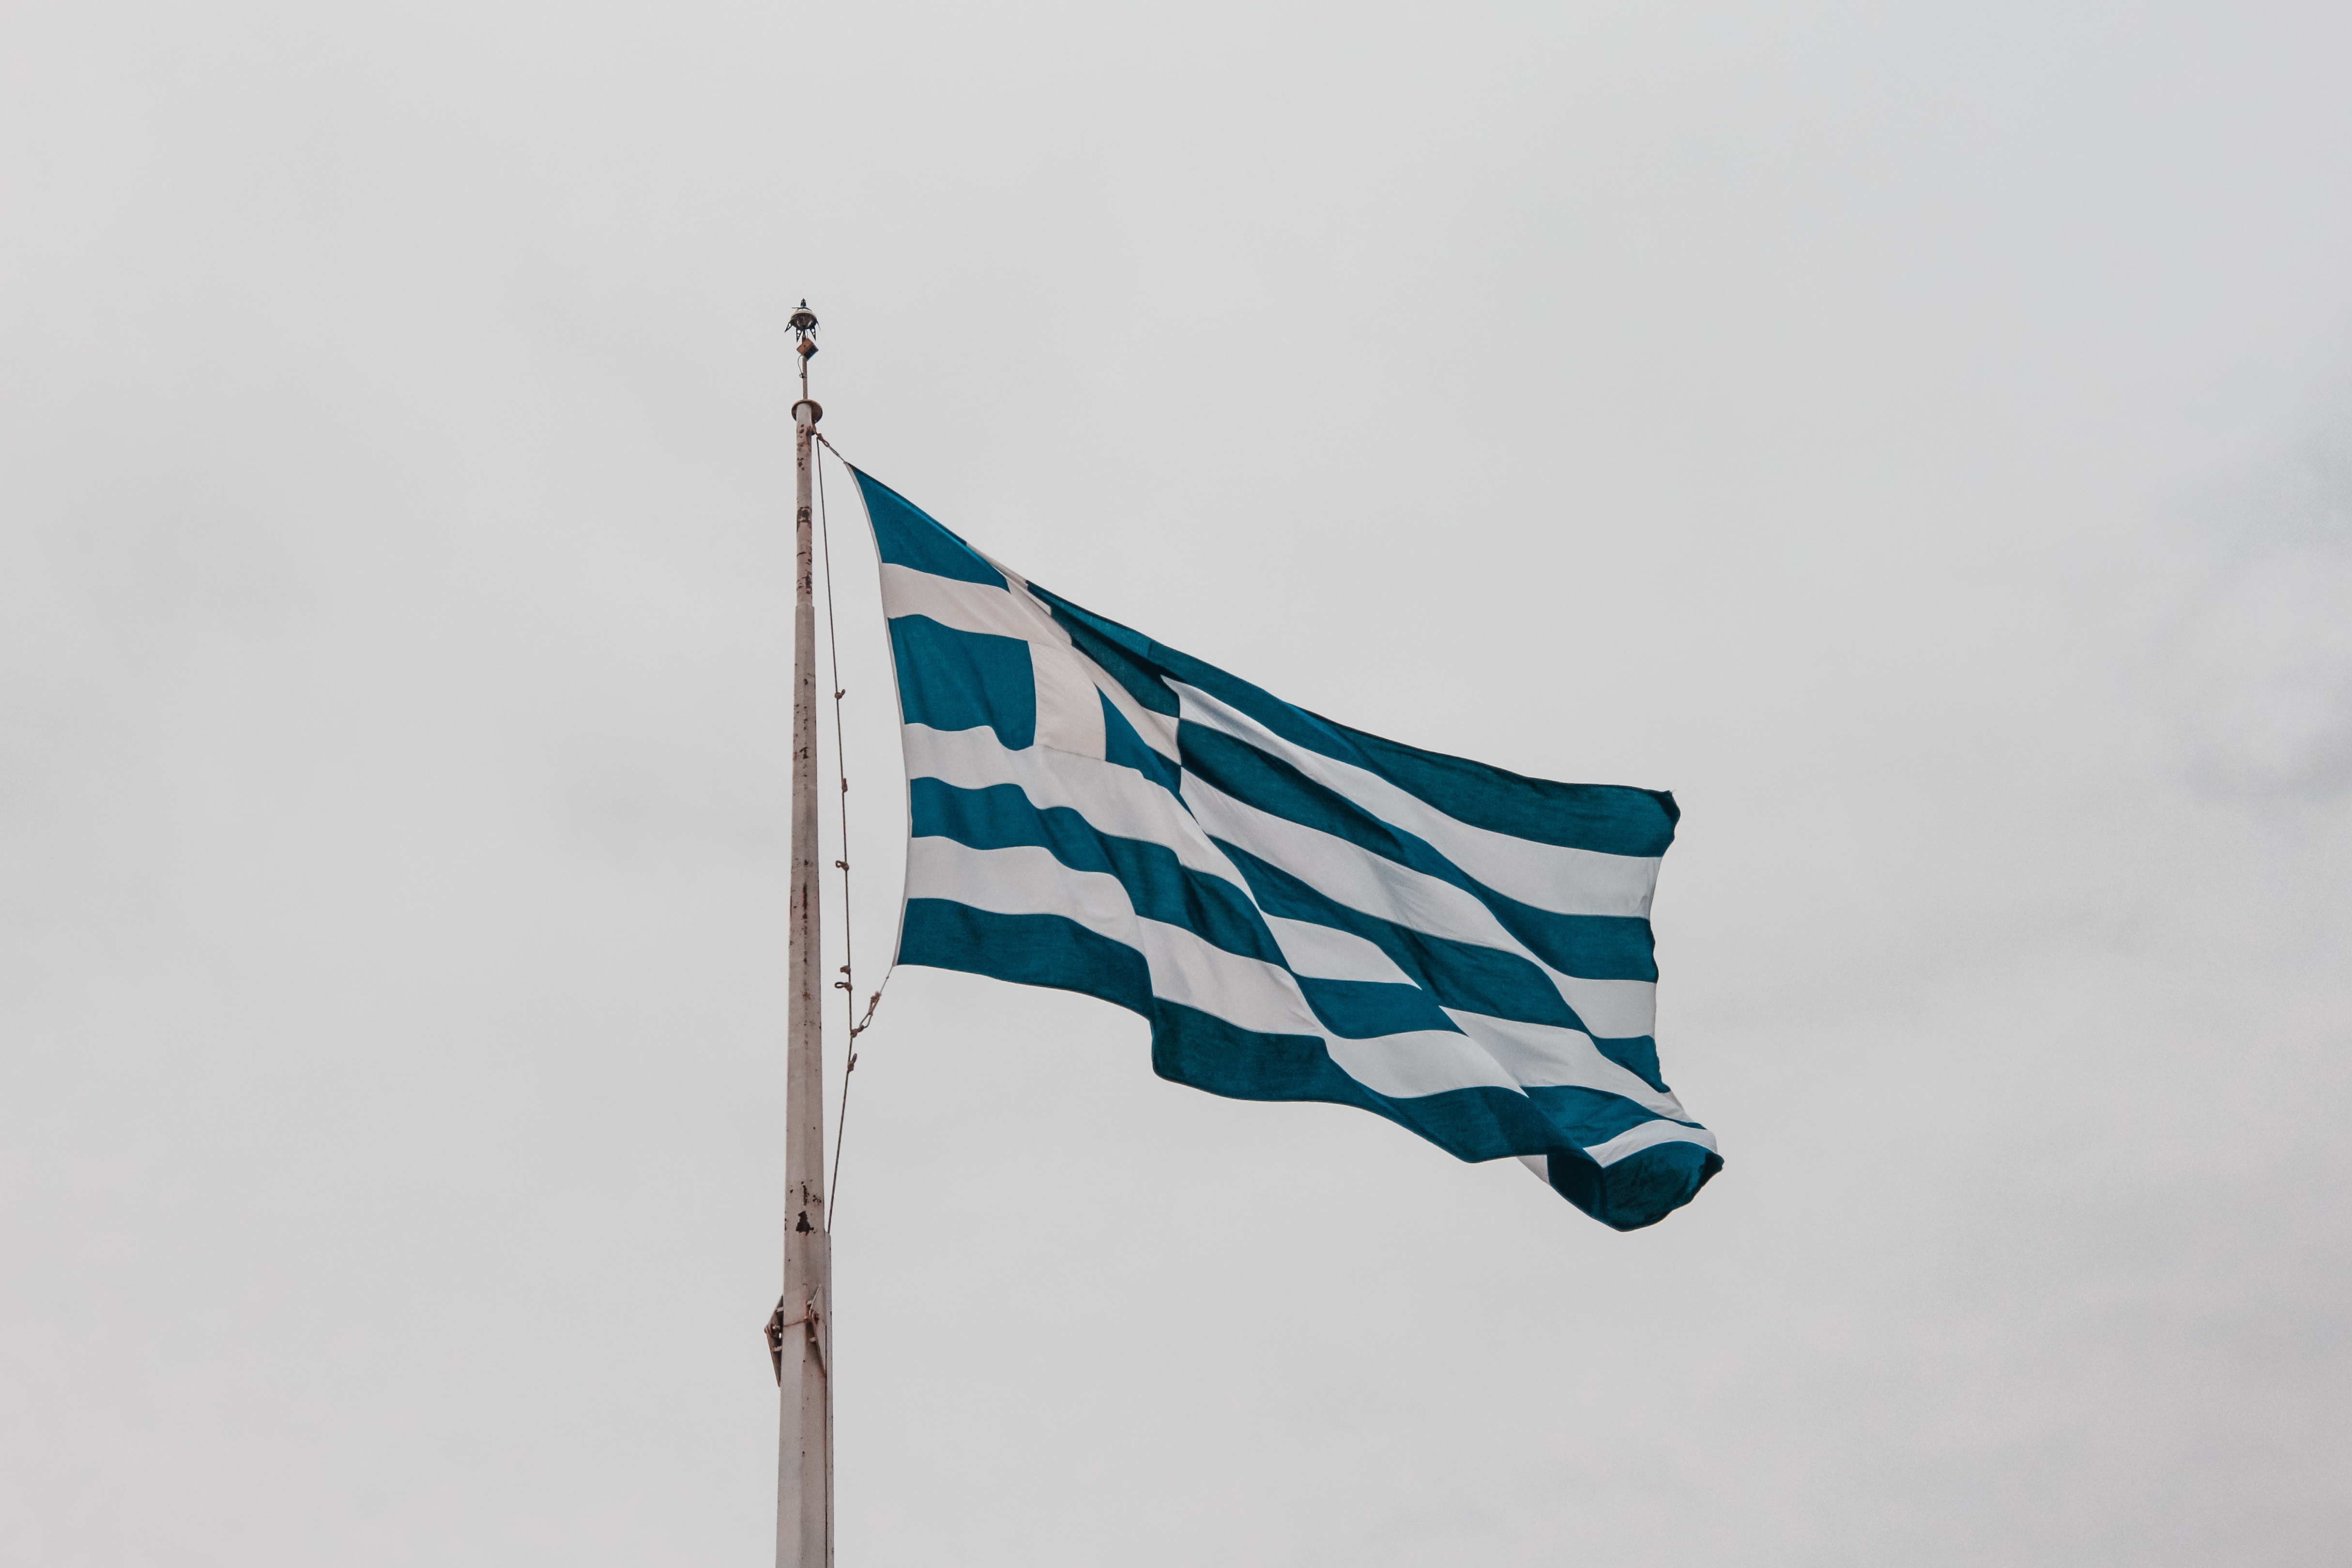 Αλεξανδρούπολη: Υψώθηκε στα σύνορα η μεγαλύτερη ελληνική σημαία 600 τ.μ.